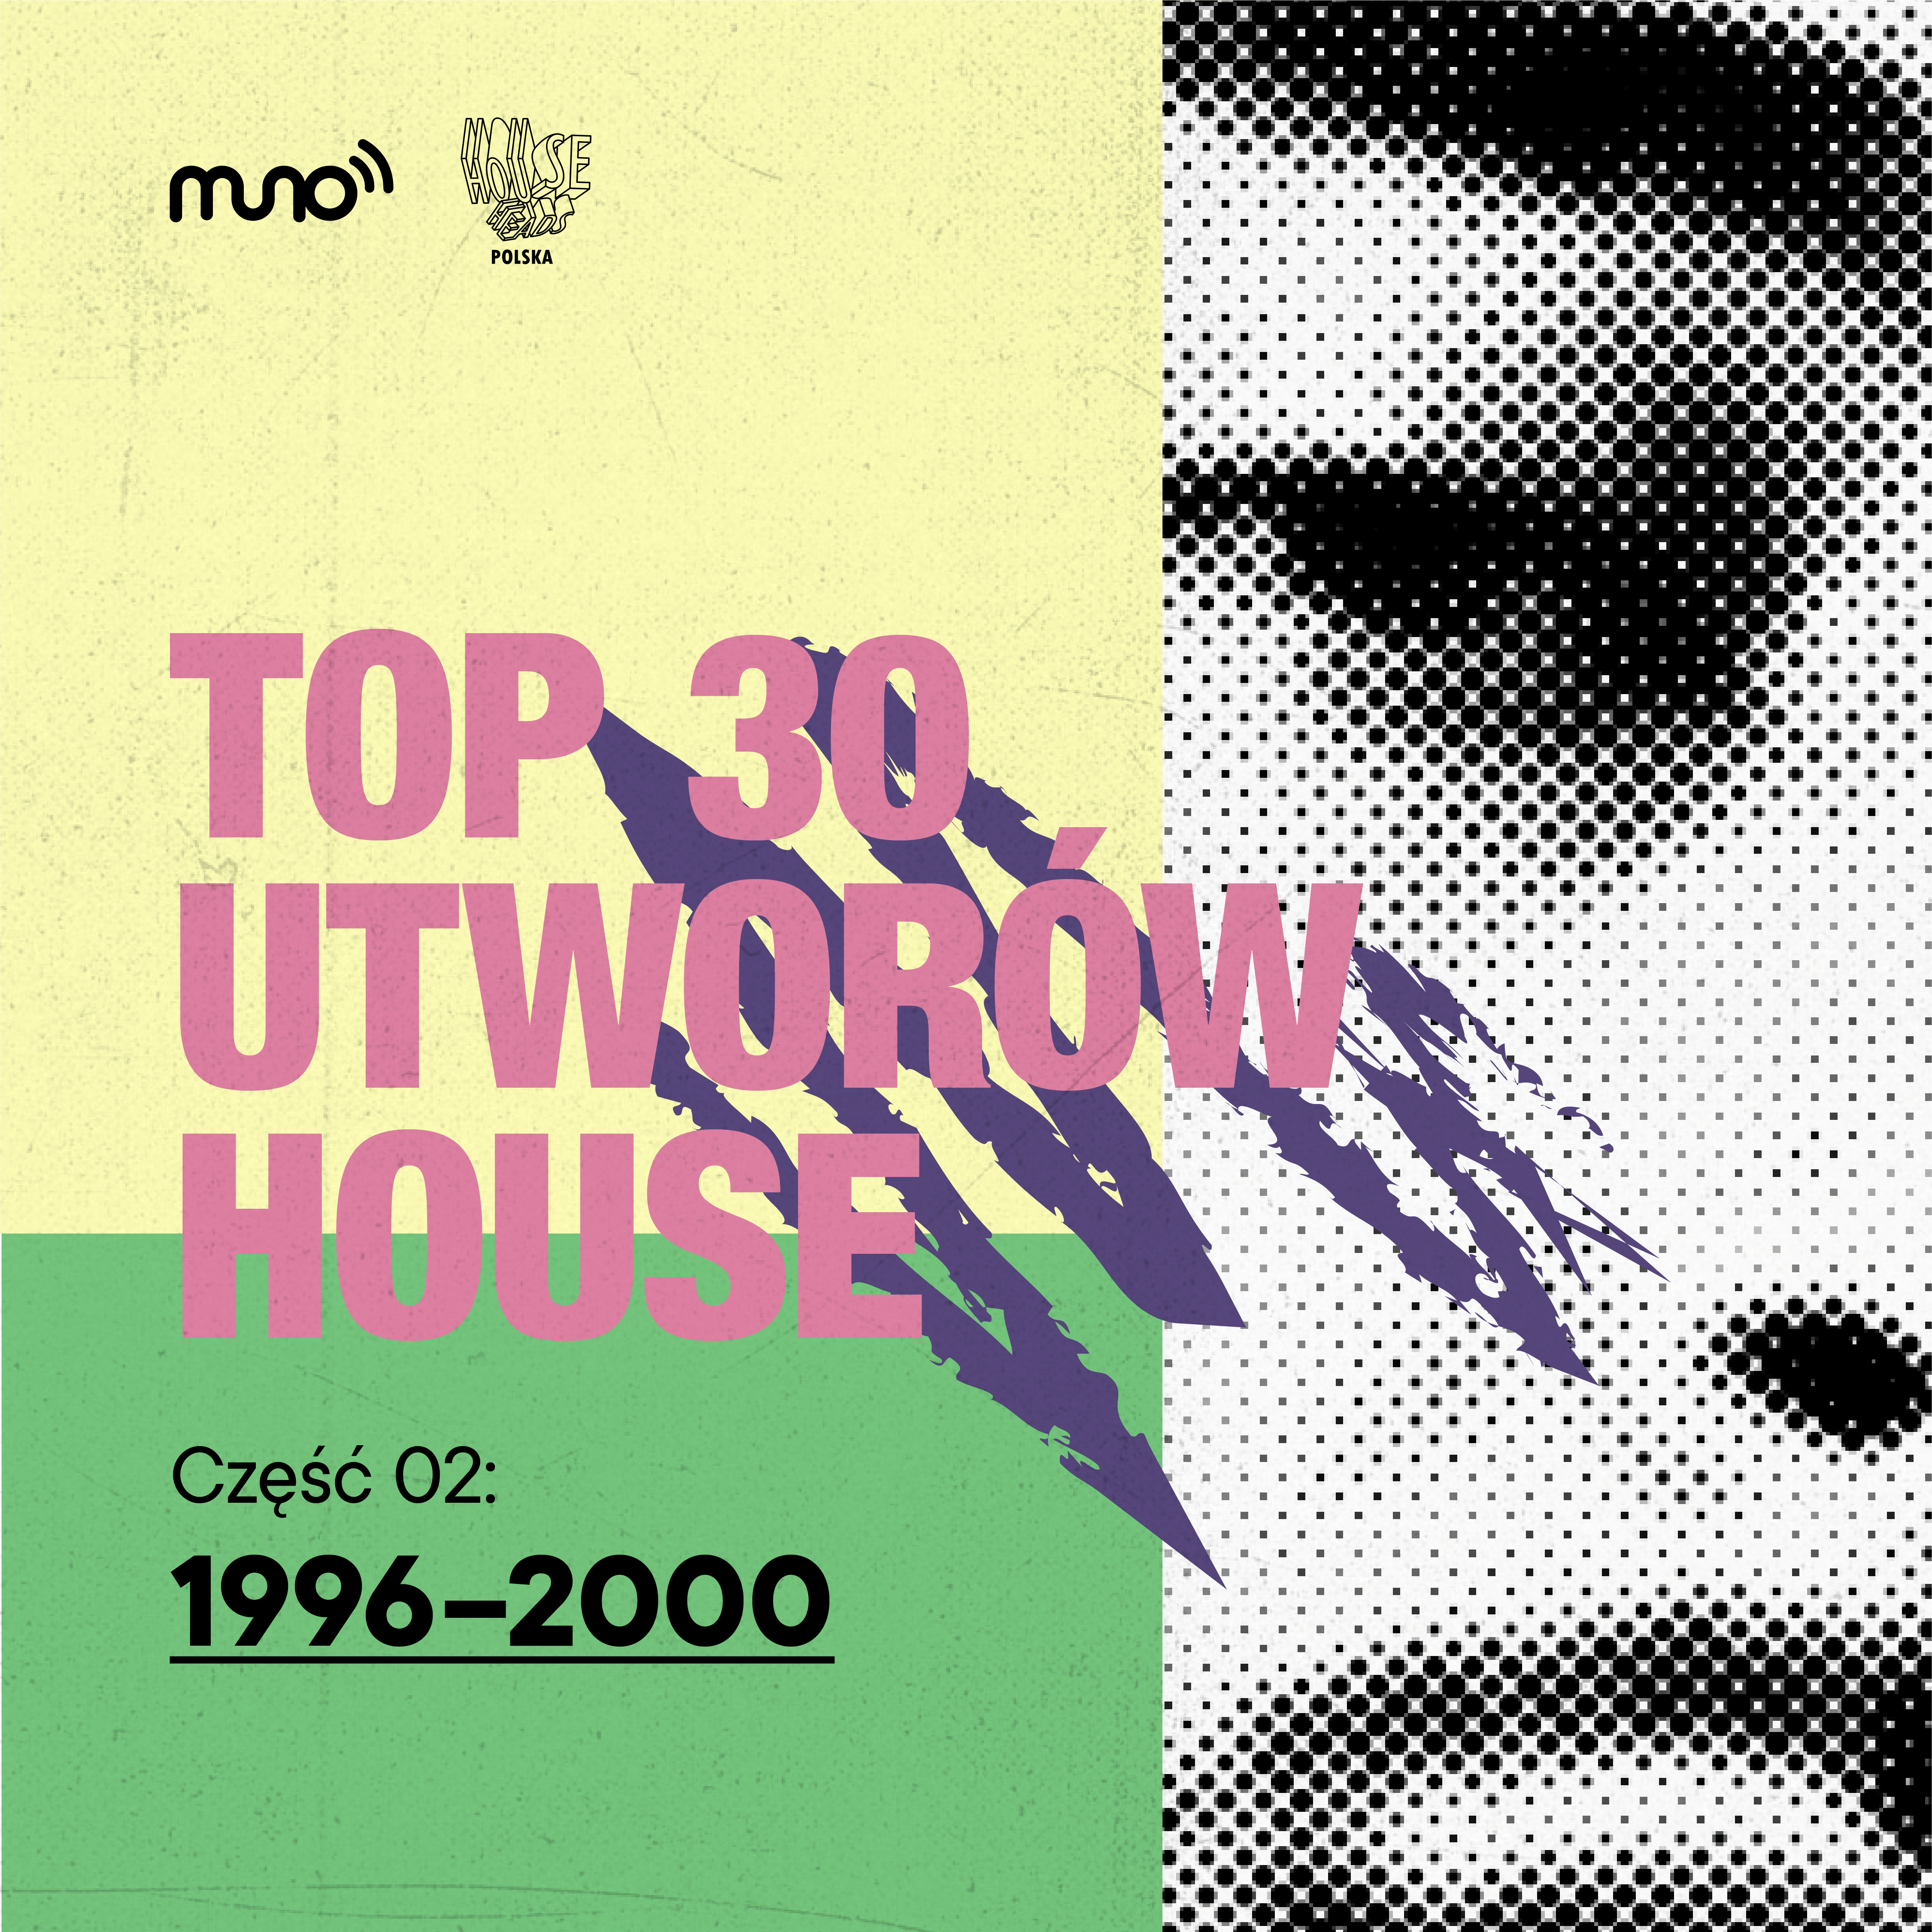 TOP 30 utworów house: 1996-2000